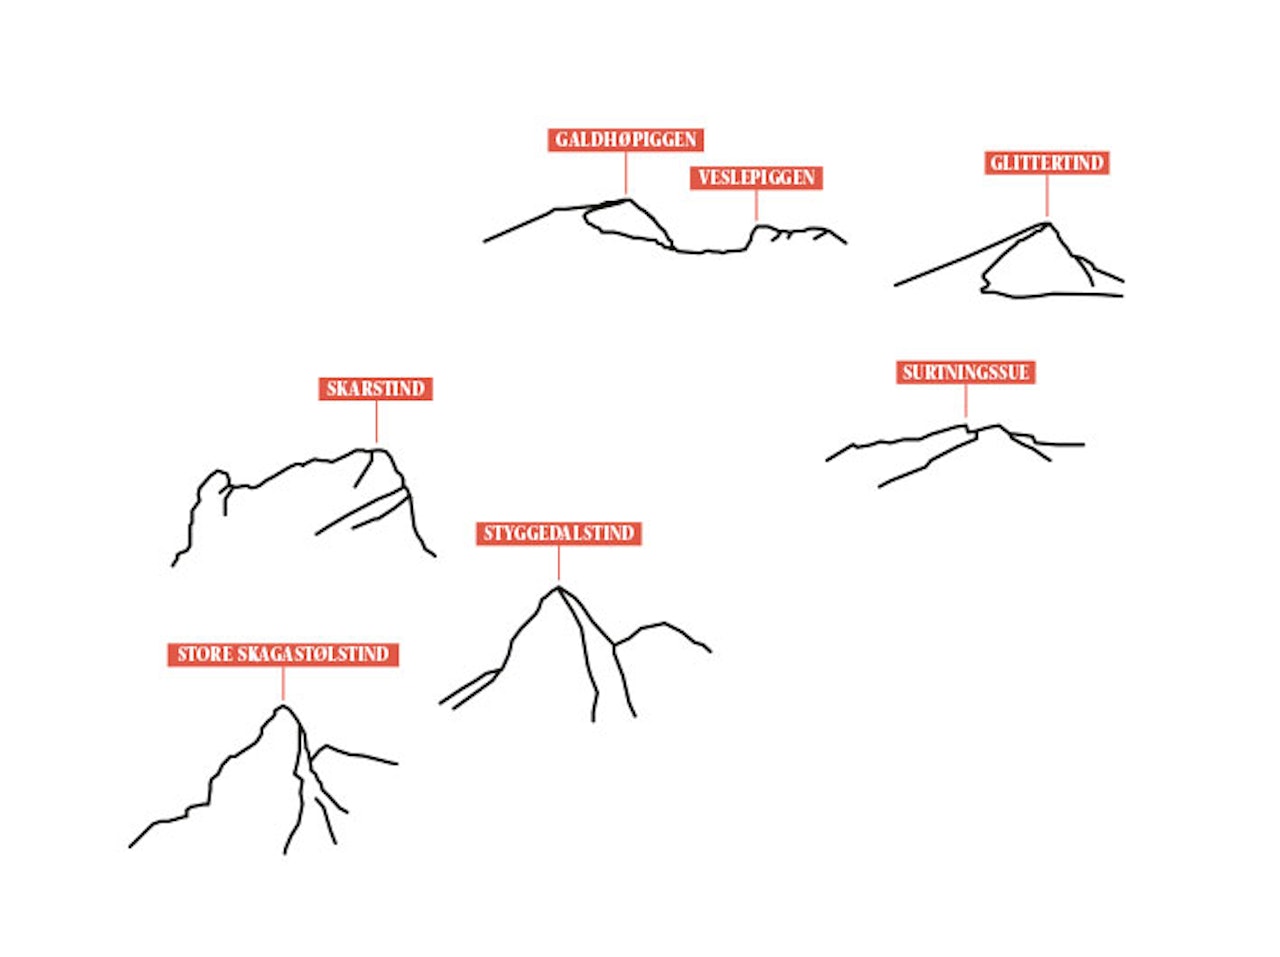 NORGES TAK: Norges syv høyeste fjell ligger i Jotunheimen. Med omliggende hytter og hvis vær og form tillater det, så er det mulig å nå alle på en og samme tur. Illustrasjon: Eva C. Brandt